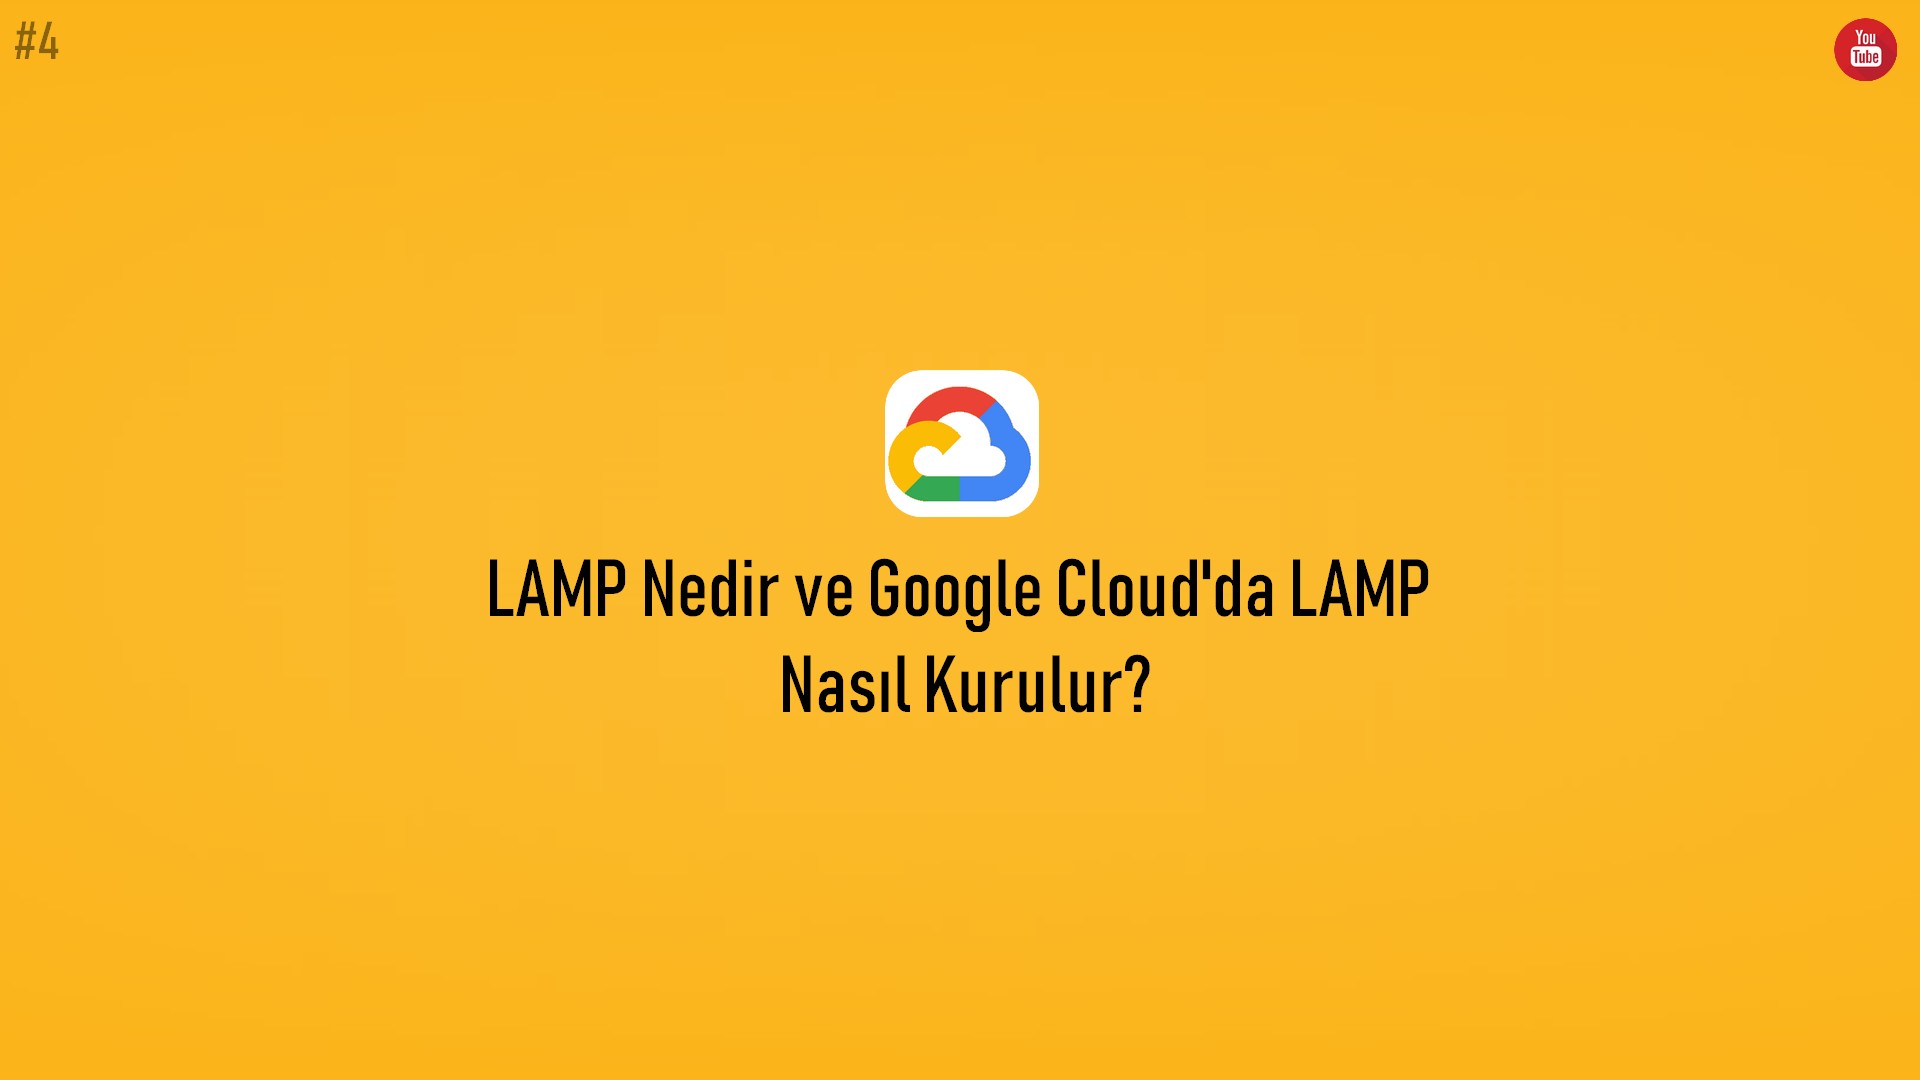 LAMP Nedir ve Google Cloud'da LAMP Nasıl Kurulur? (Video İçerik) başlıklı içeriğin resmi